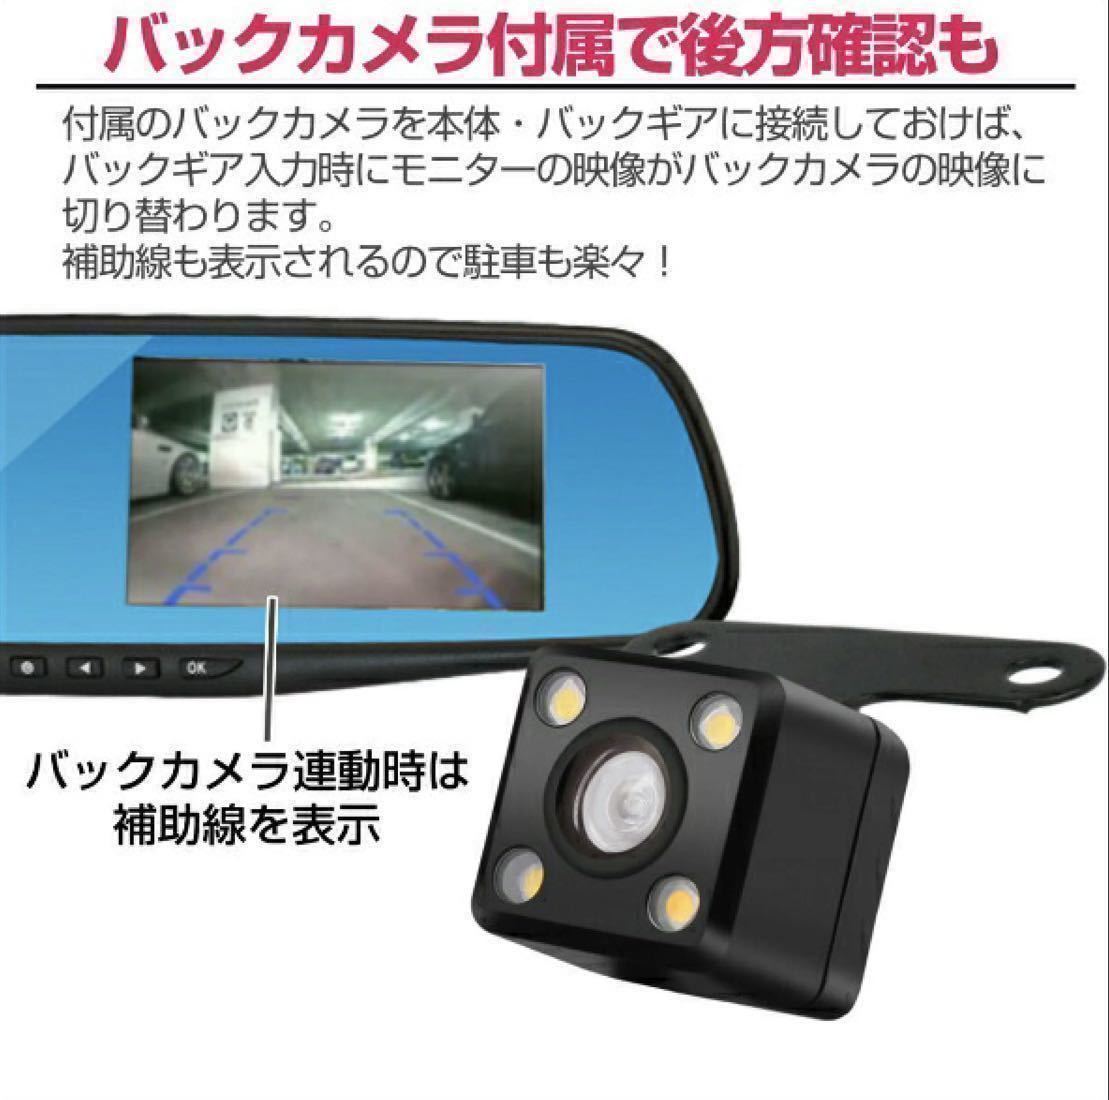 ドライブレコーダー バックカメラ 付き リアカメラ ドラレコ ルームミラー型 4.3インチ ミラー モニター 内蔵 広角 高画質 日本語説明書 車_画像3